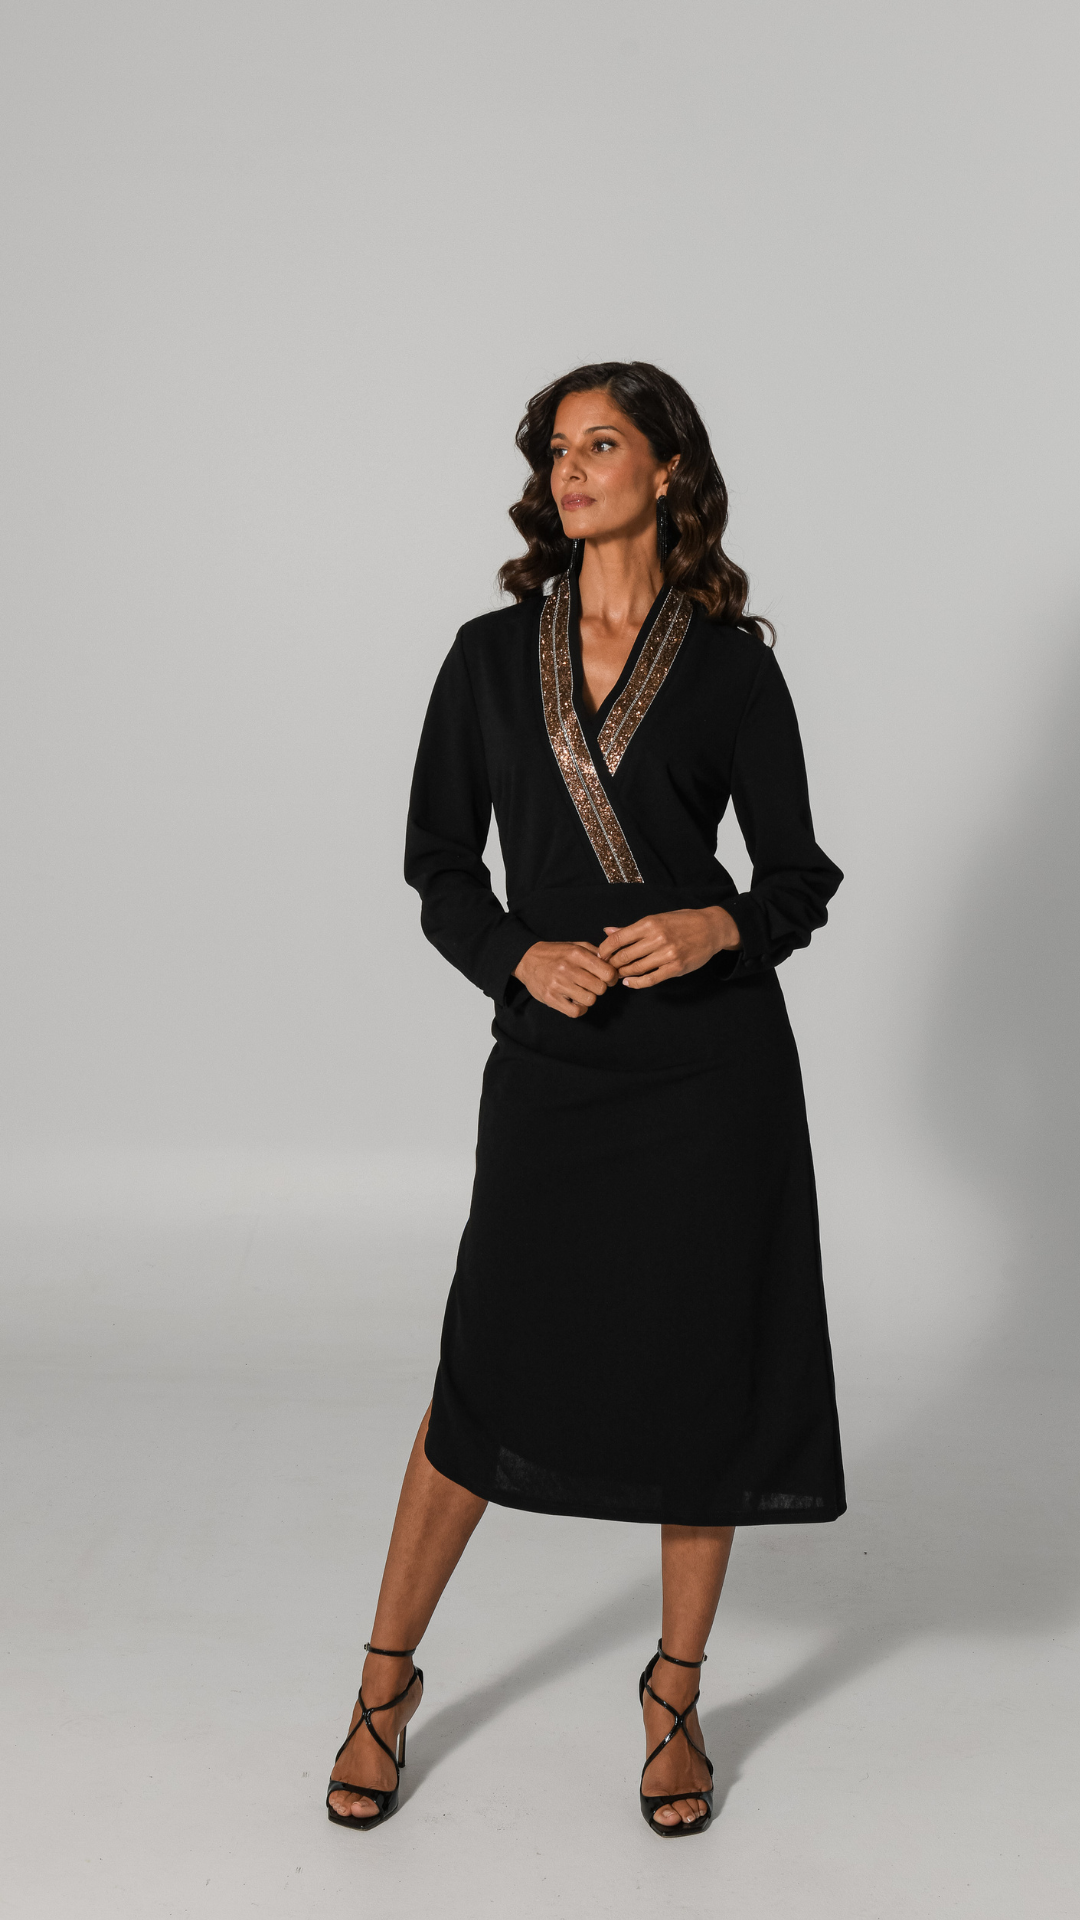 Natalie Embellished Dress - Black